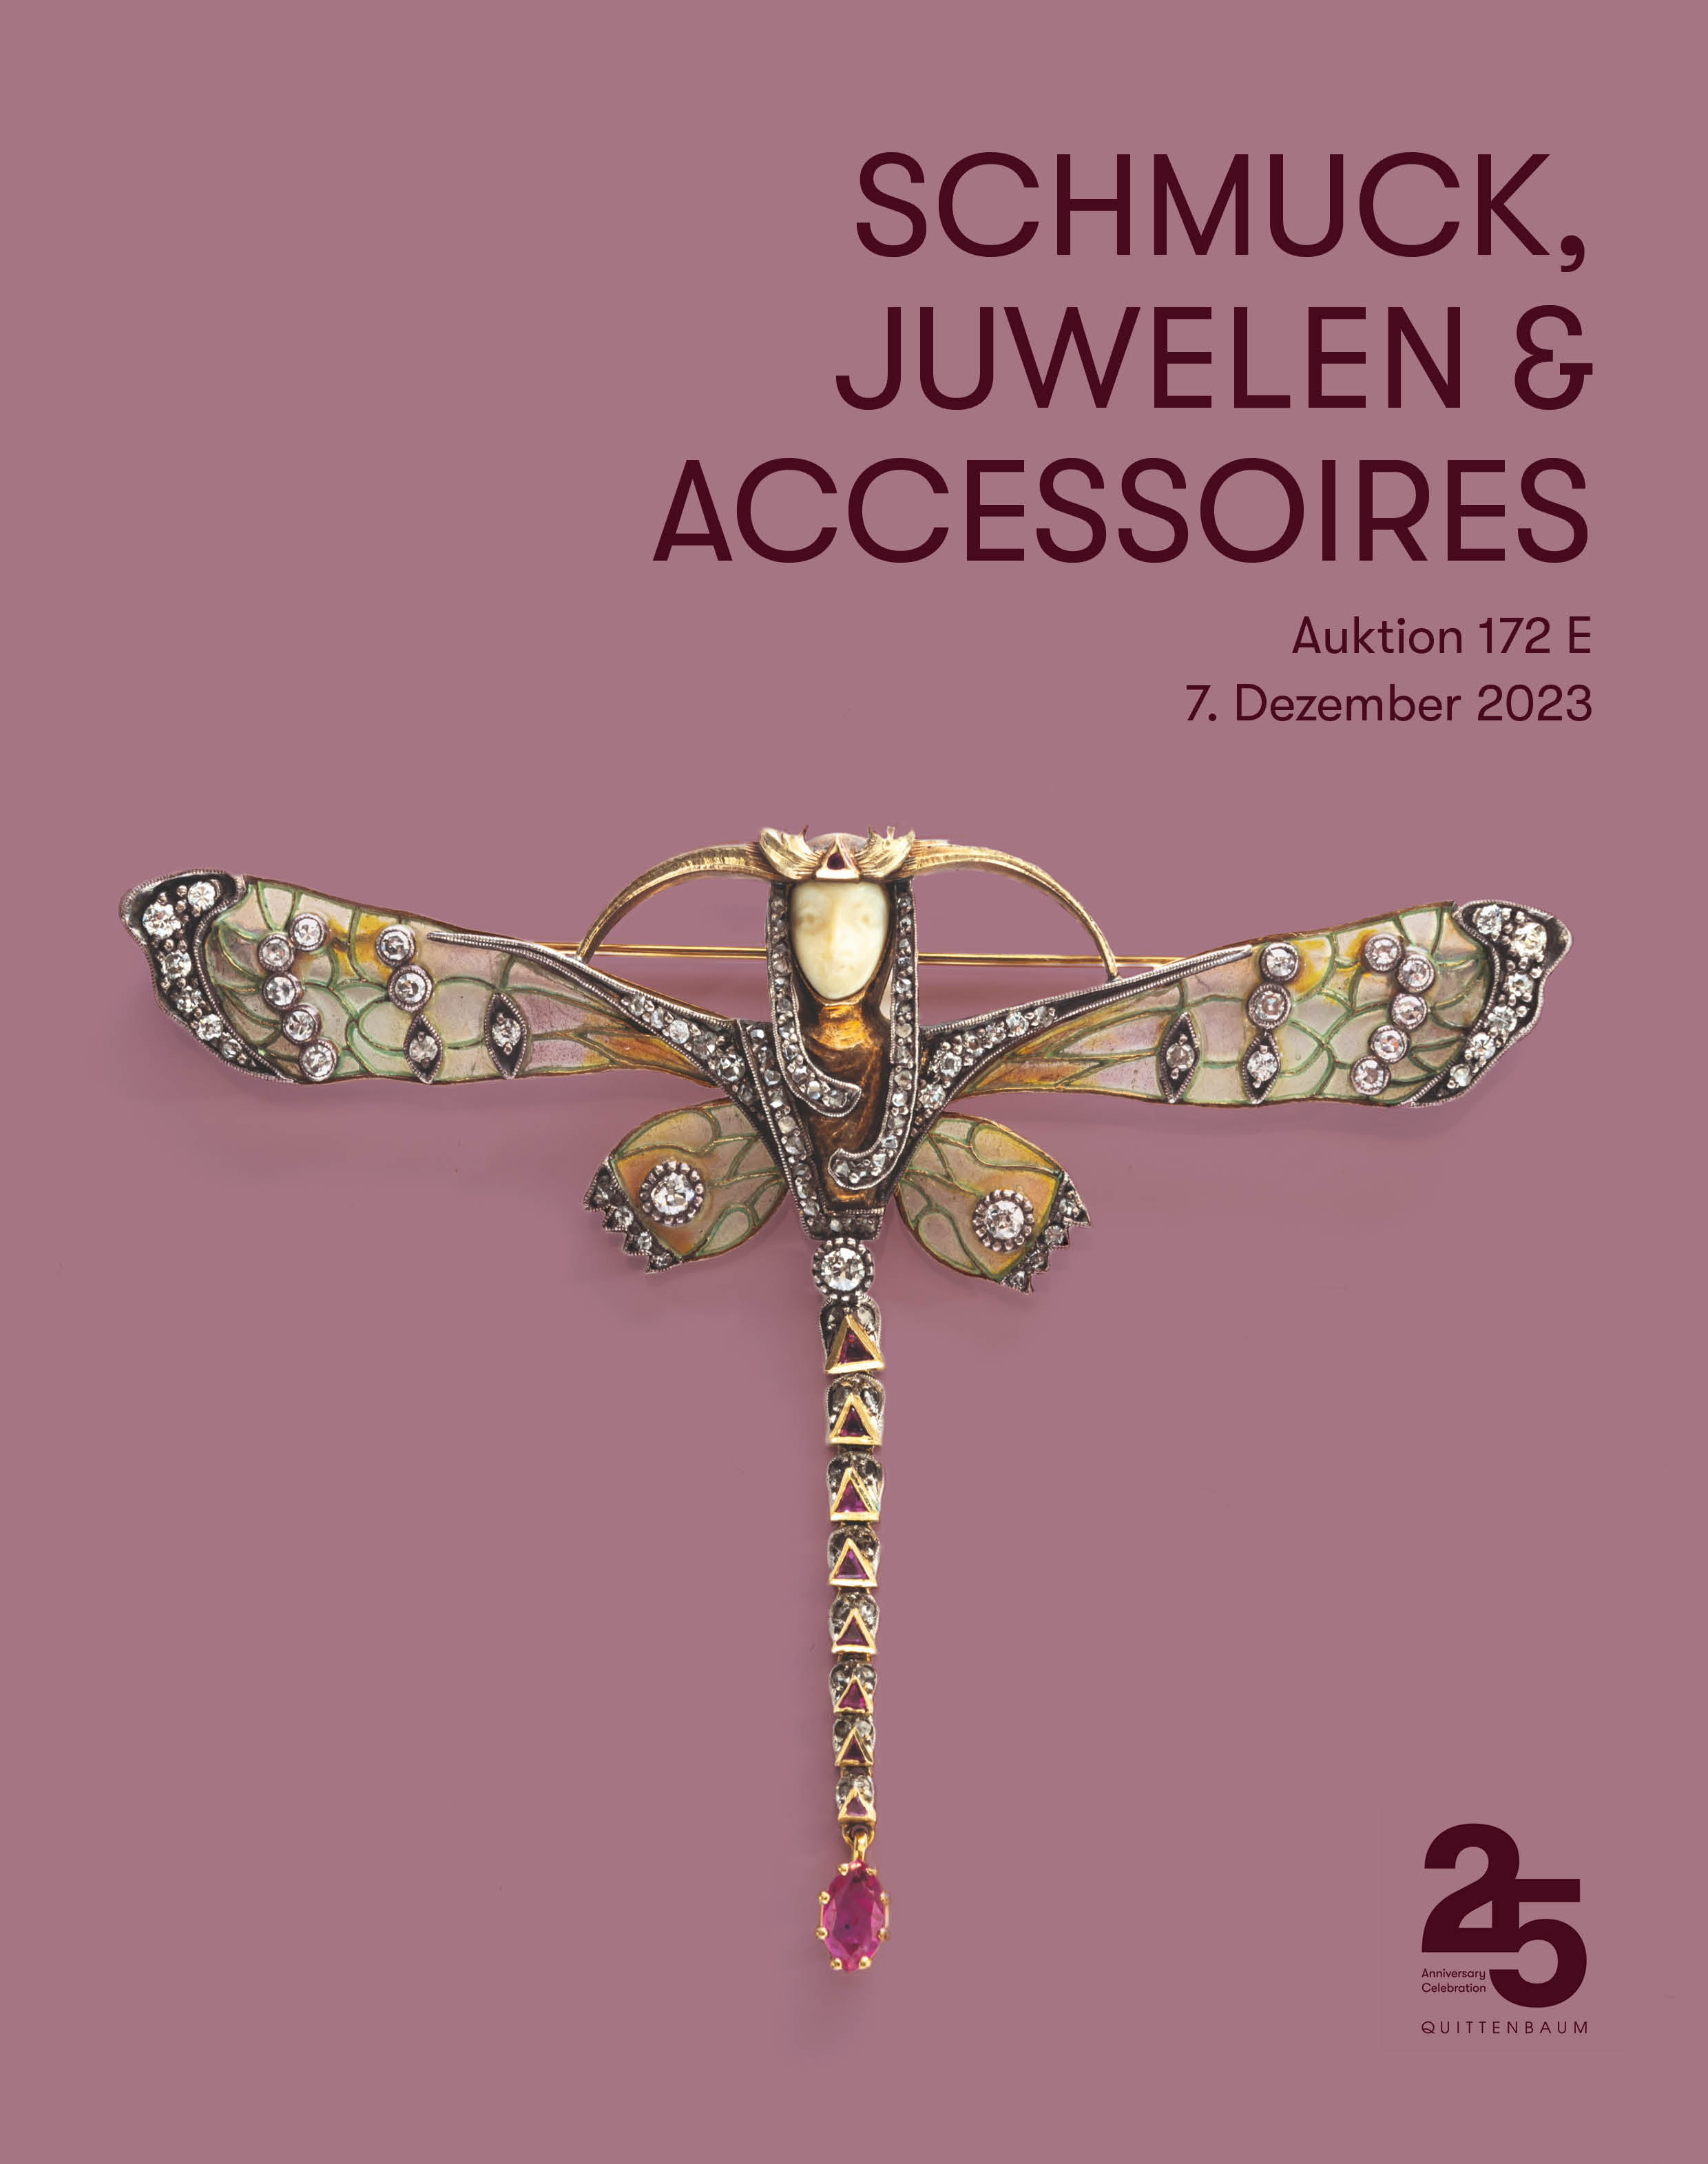 Schmuck, Juwelen & Accessoires